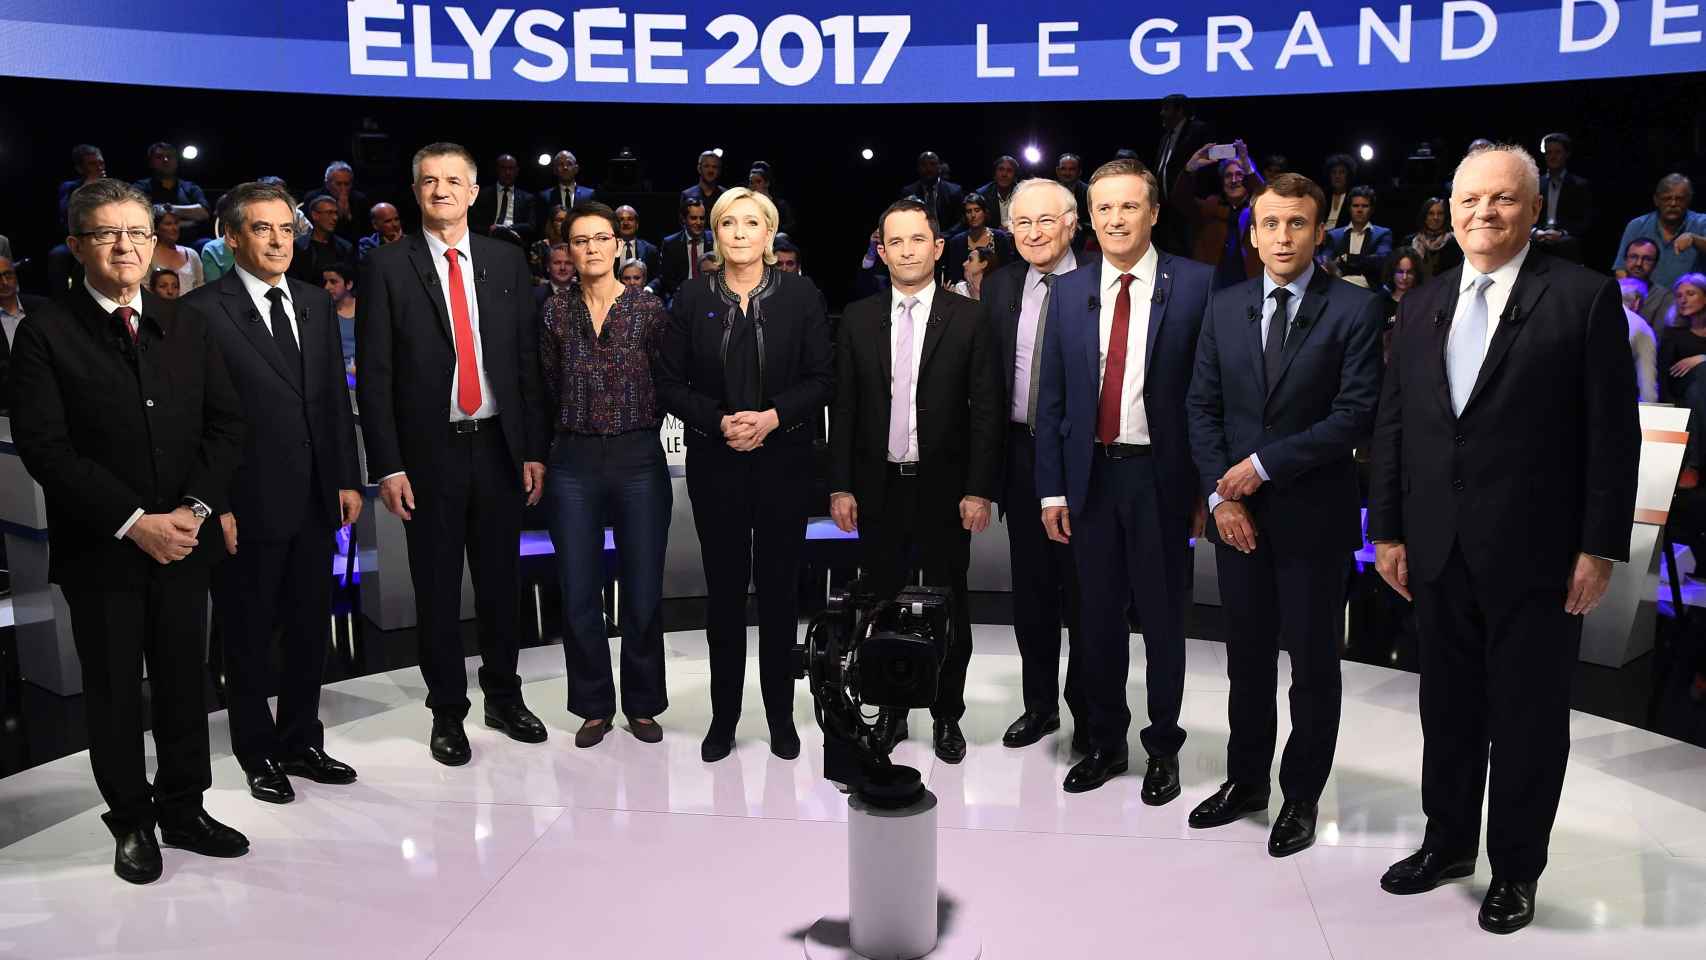 Los once candidatos a las presidenciales francesas minutos antes de empezar.